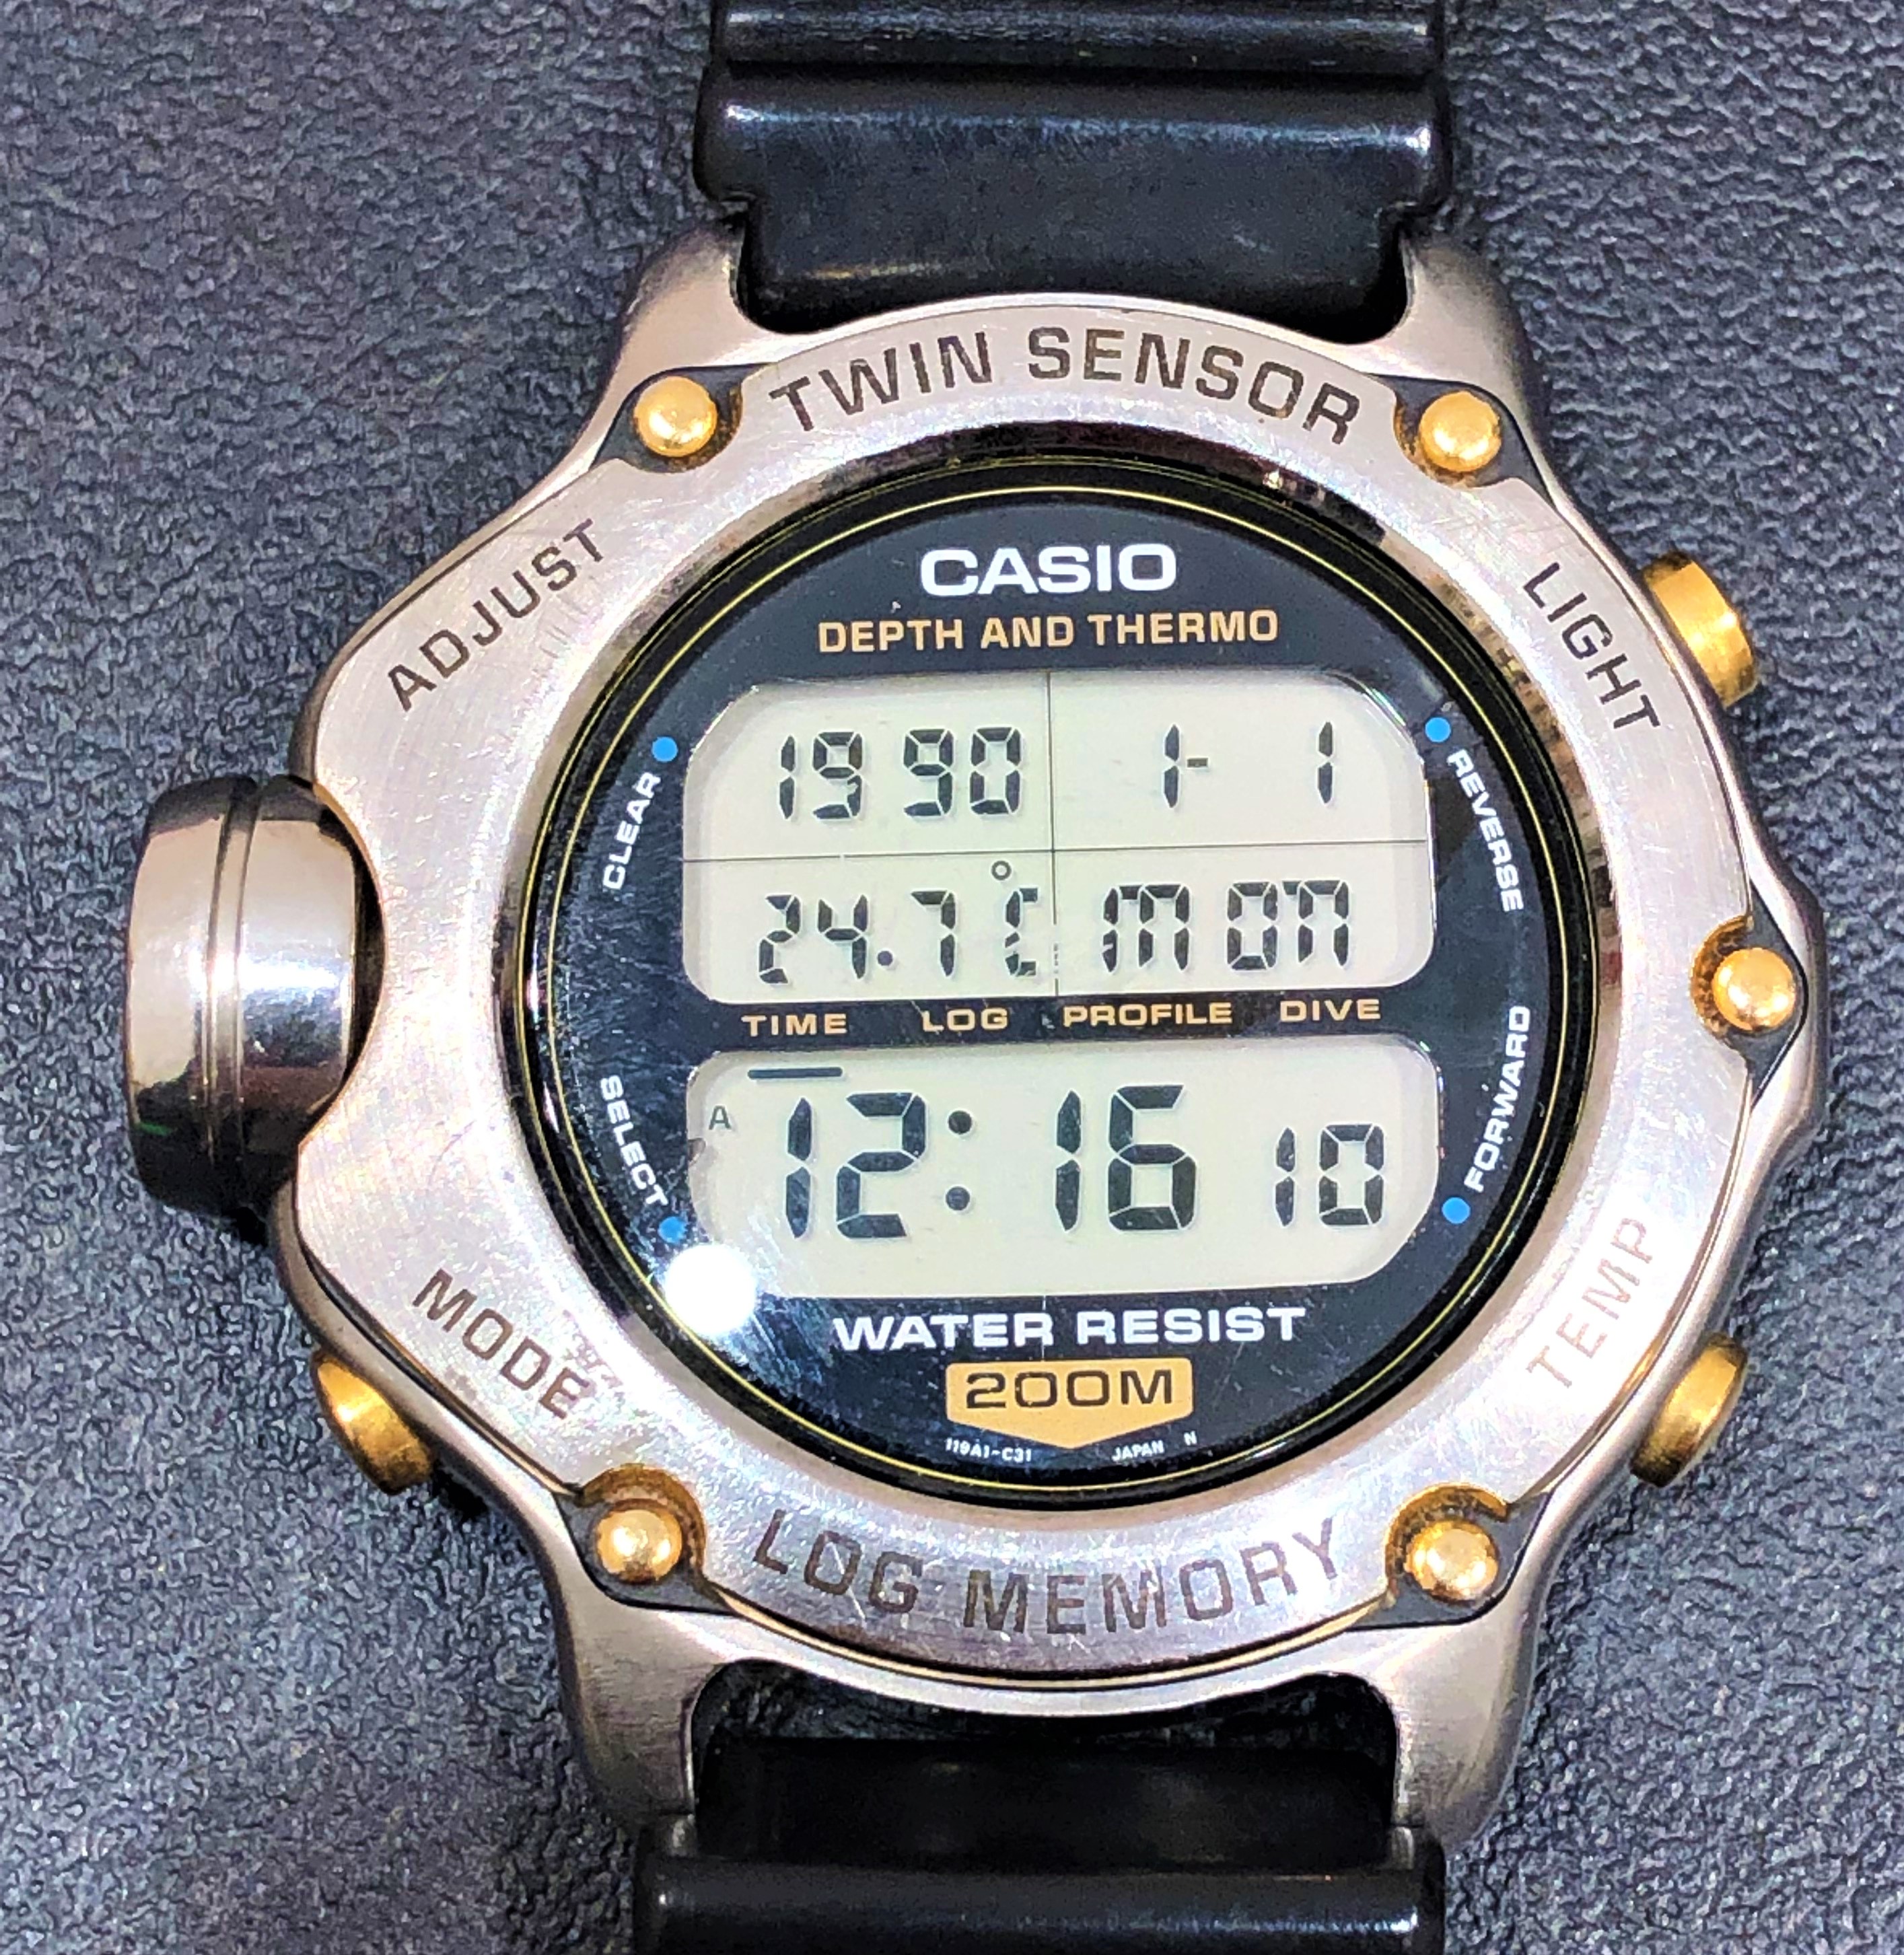 【CASIO/カシオ】DEP-600 ツインセンサーロッグメモリー 腕時計